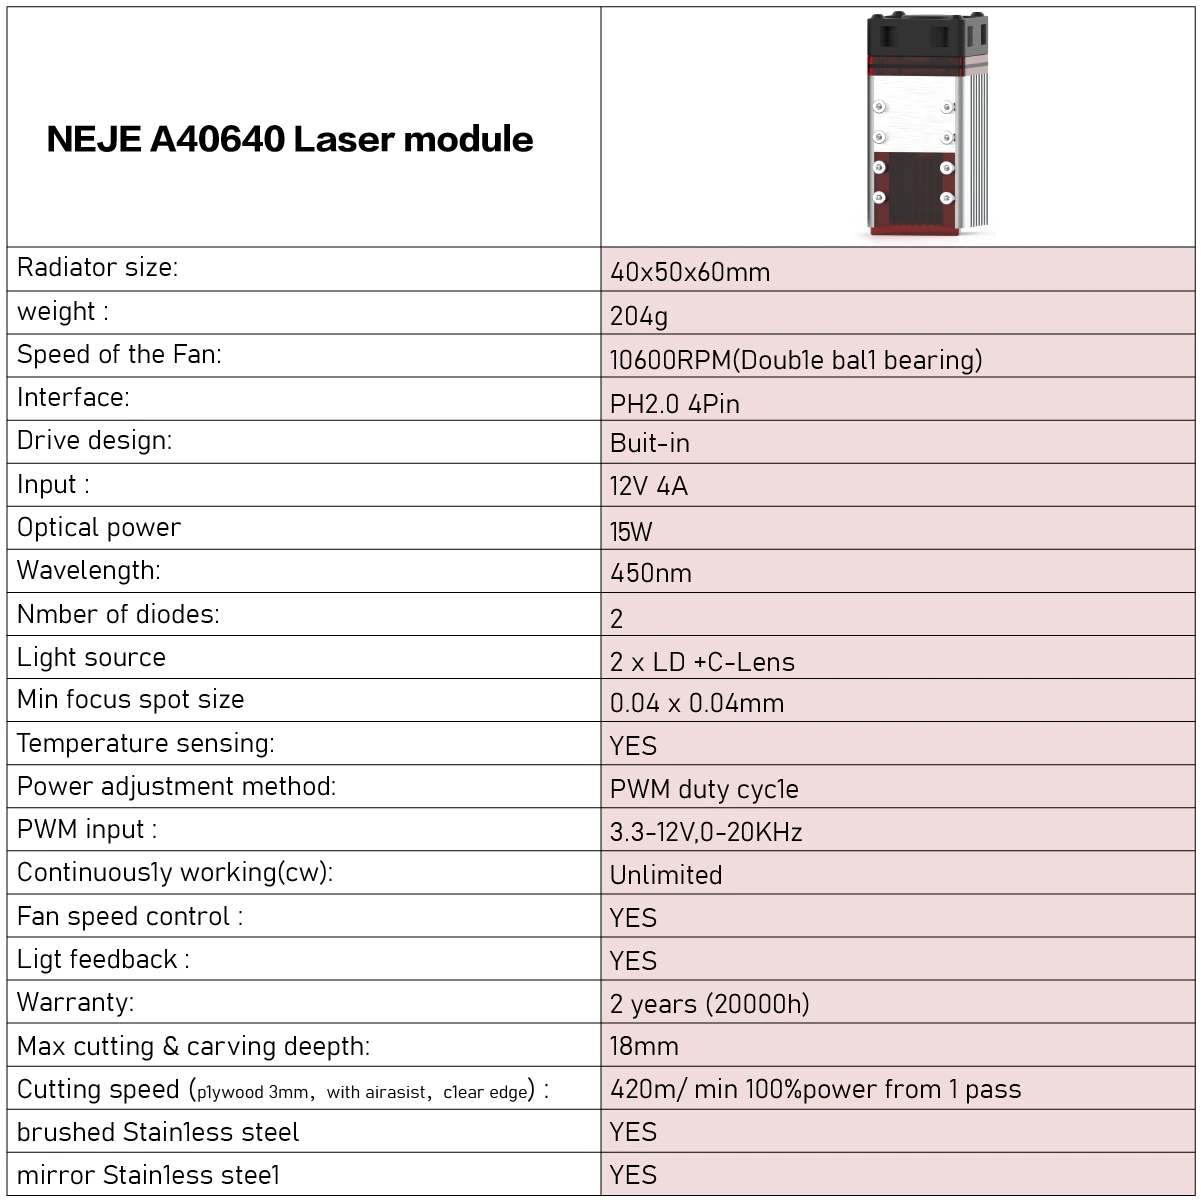 NEJE-A40640-Laser-Engraver-Cutter-Module-Kits-Double-Laser-Beam-15w-Output-Laser-For-DIY-Laser-Engra-1882454-9